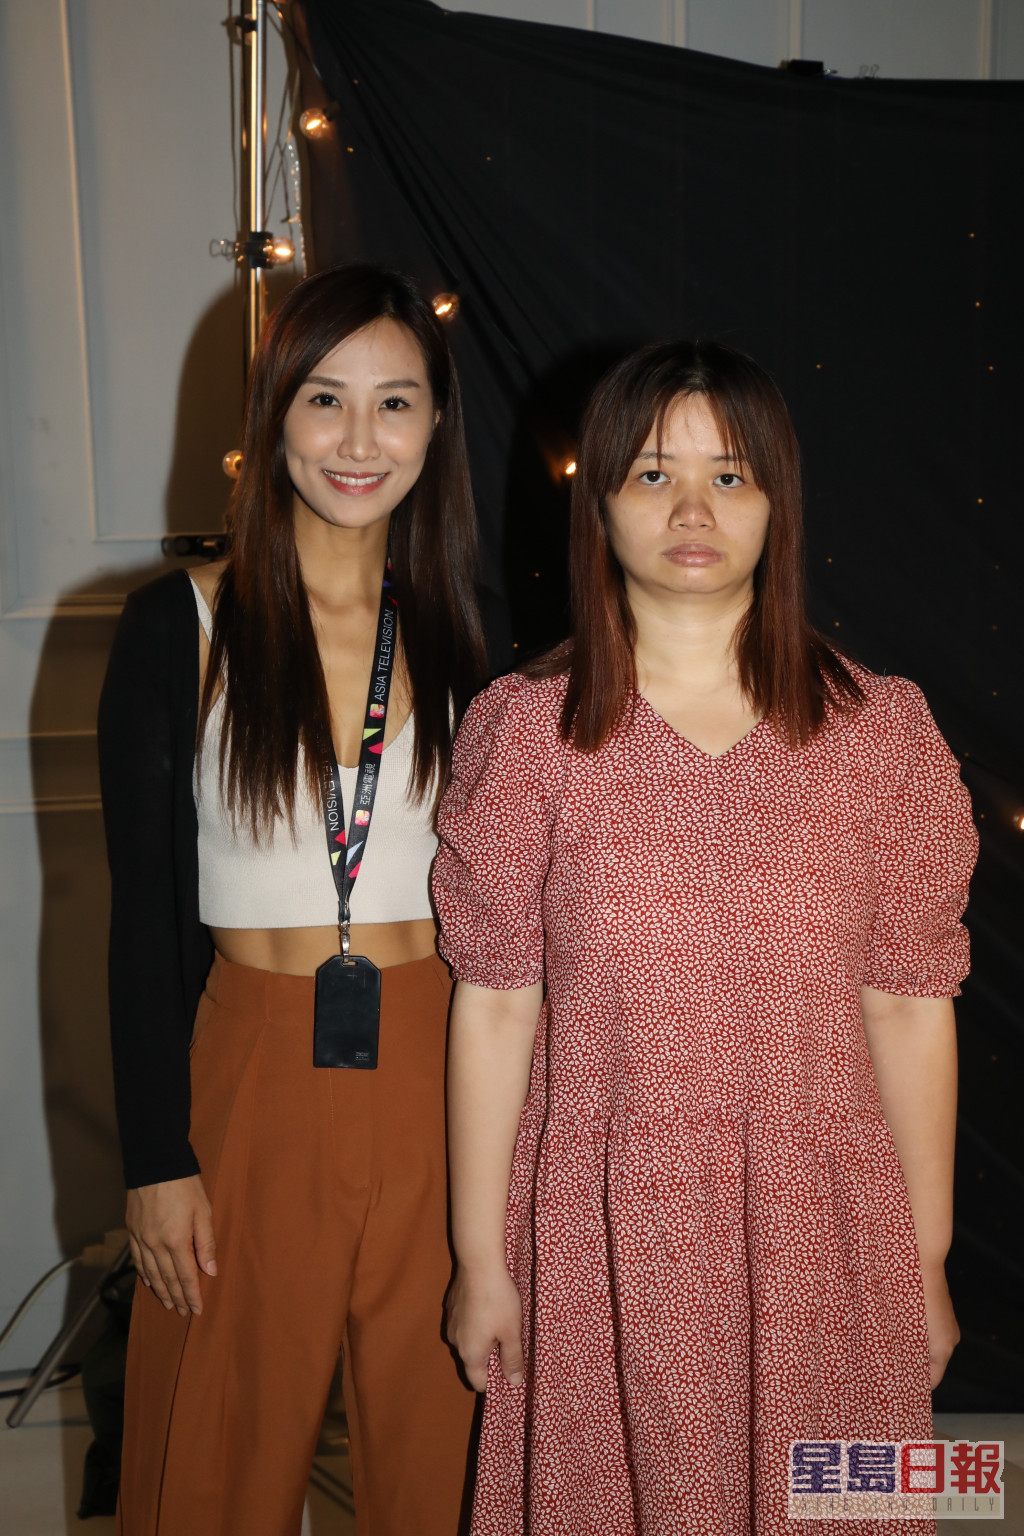 阿儀（右）是「亞洲電視數碼媒體有限公司」旗下藝人，但唔知公司被清盤。